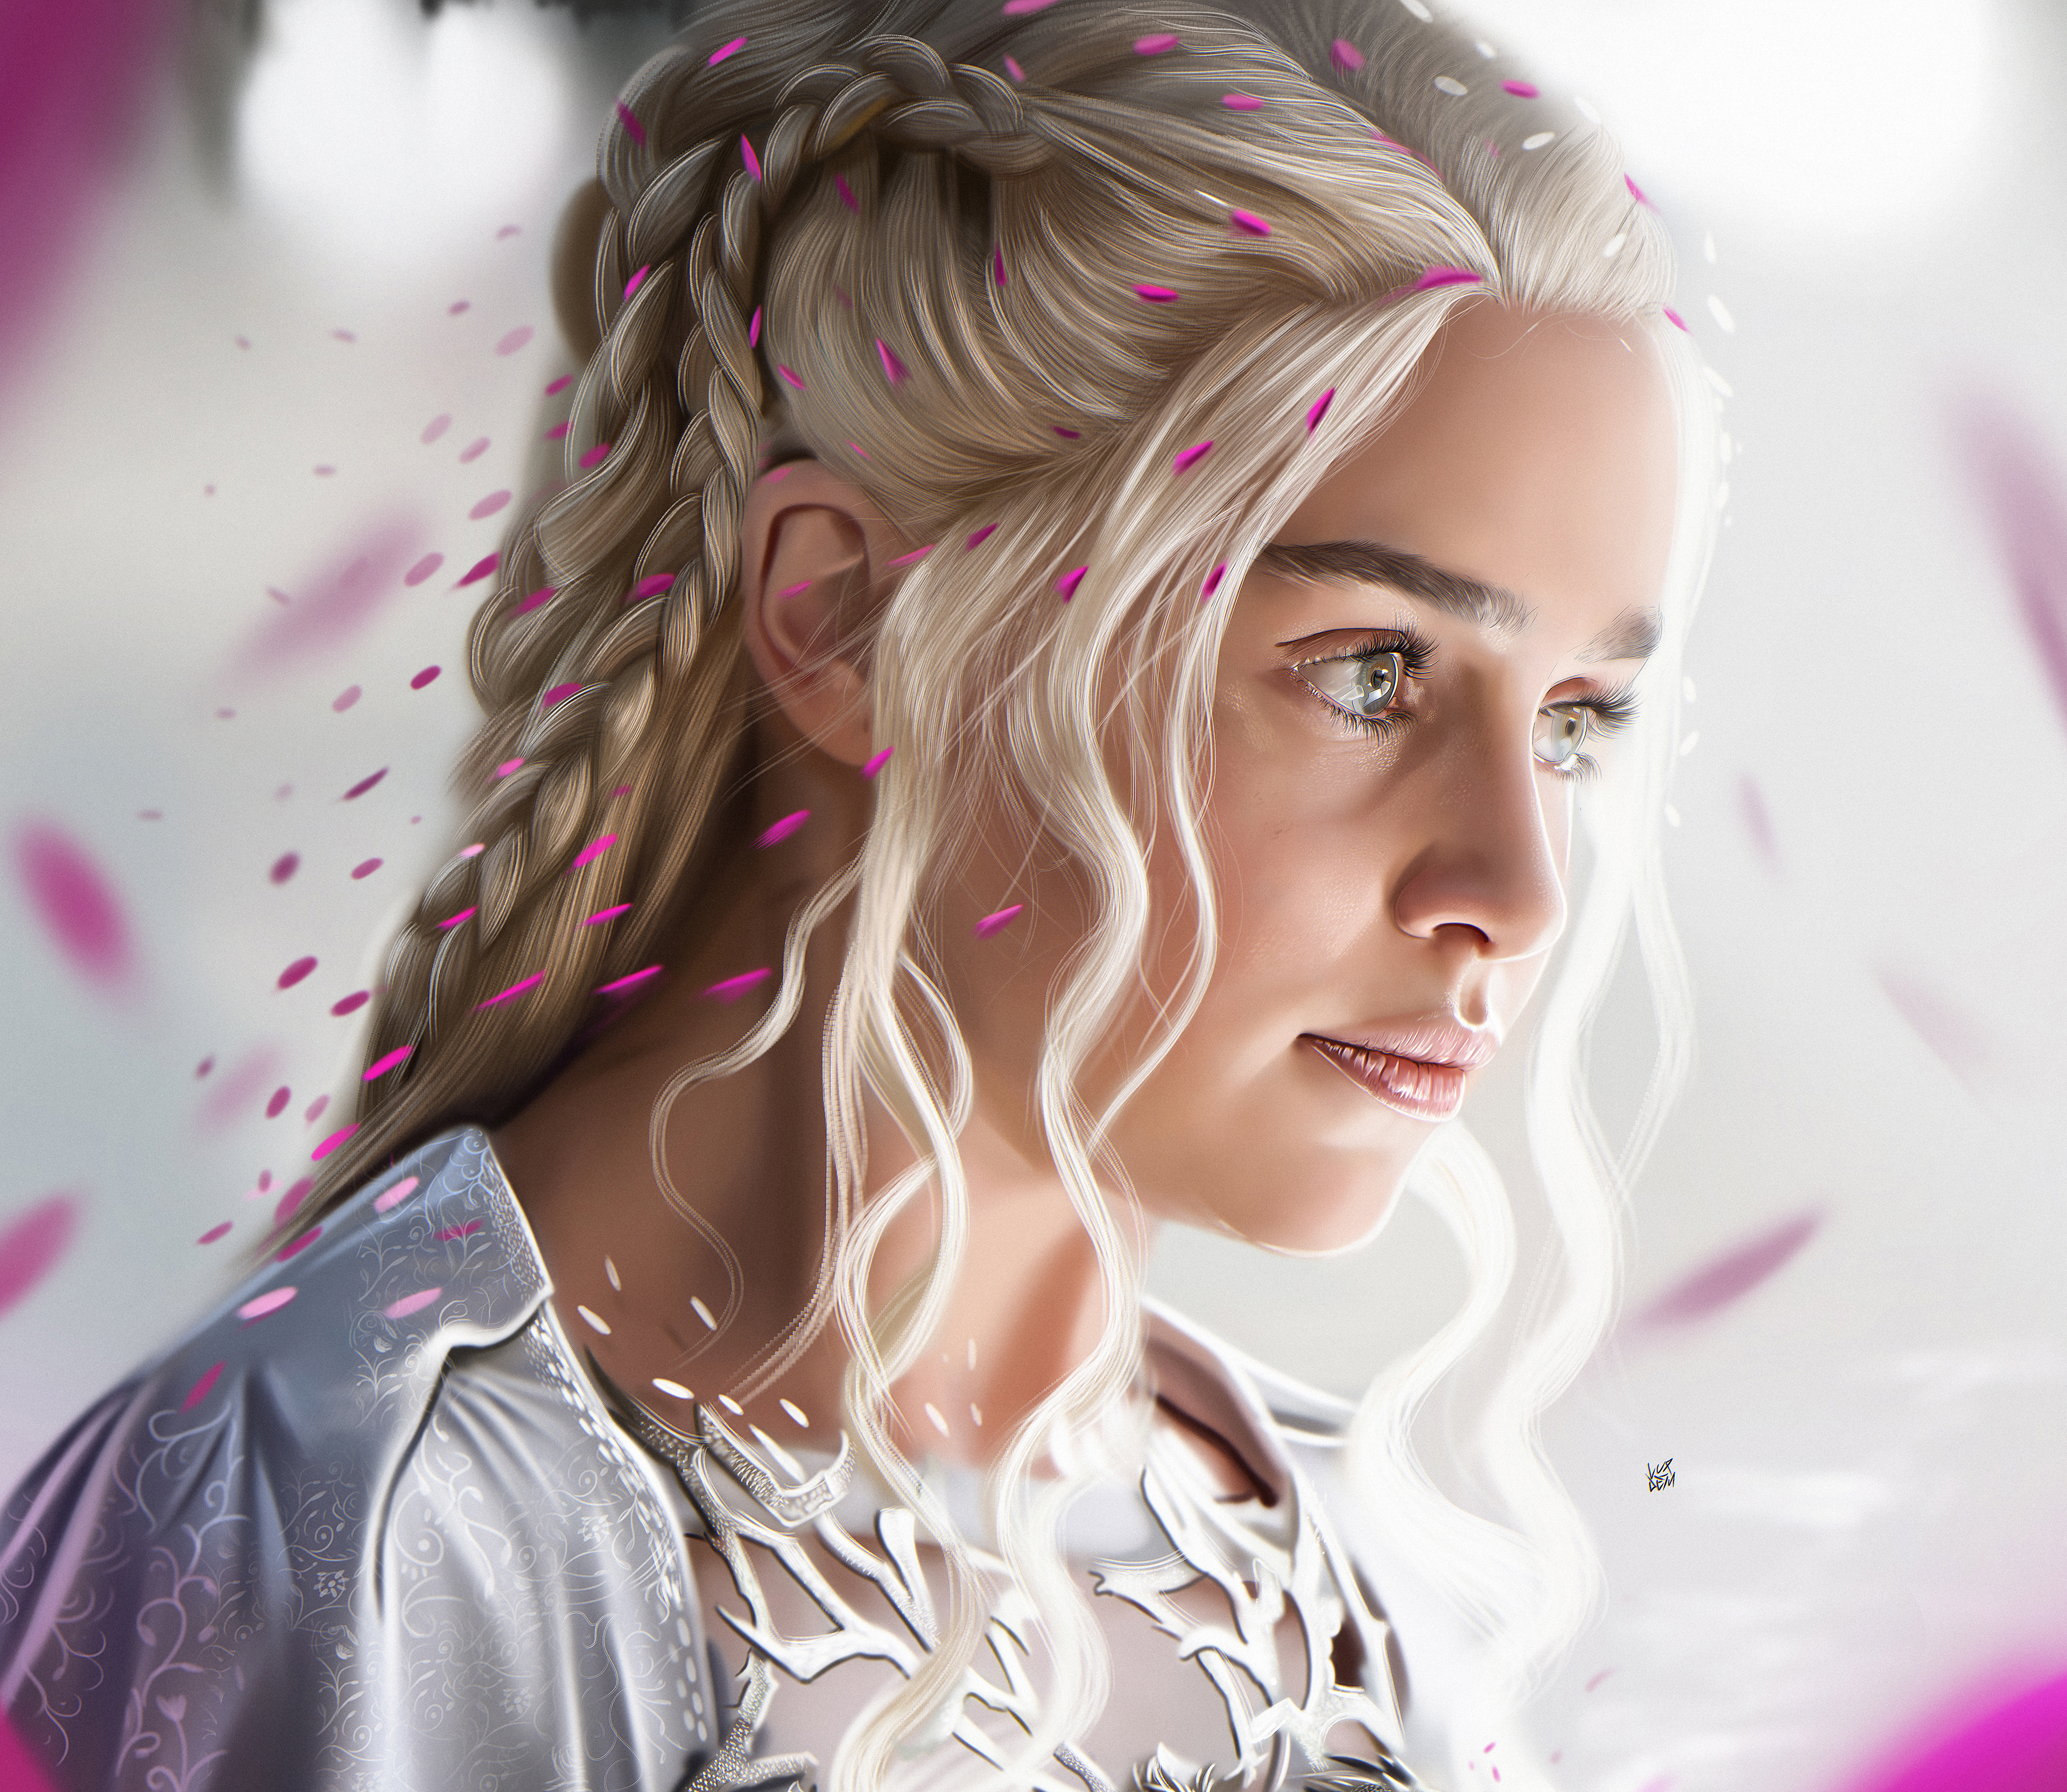 Emilia Clarke, Hd, 4k , HD Wallpaper & Backgrounds